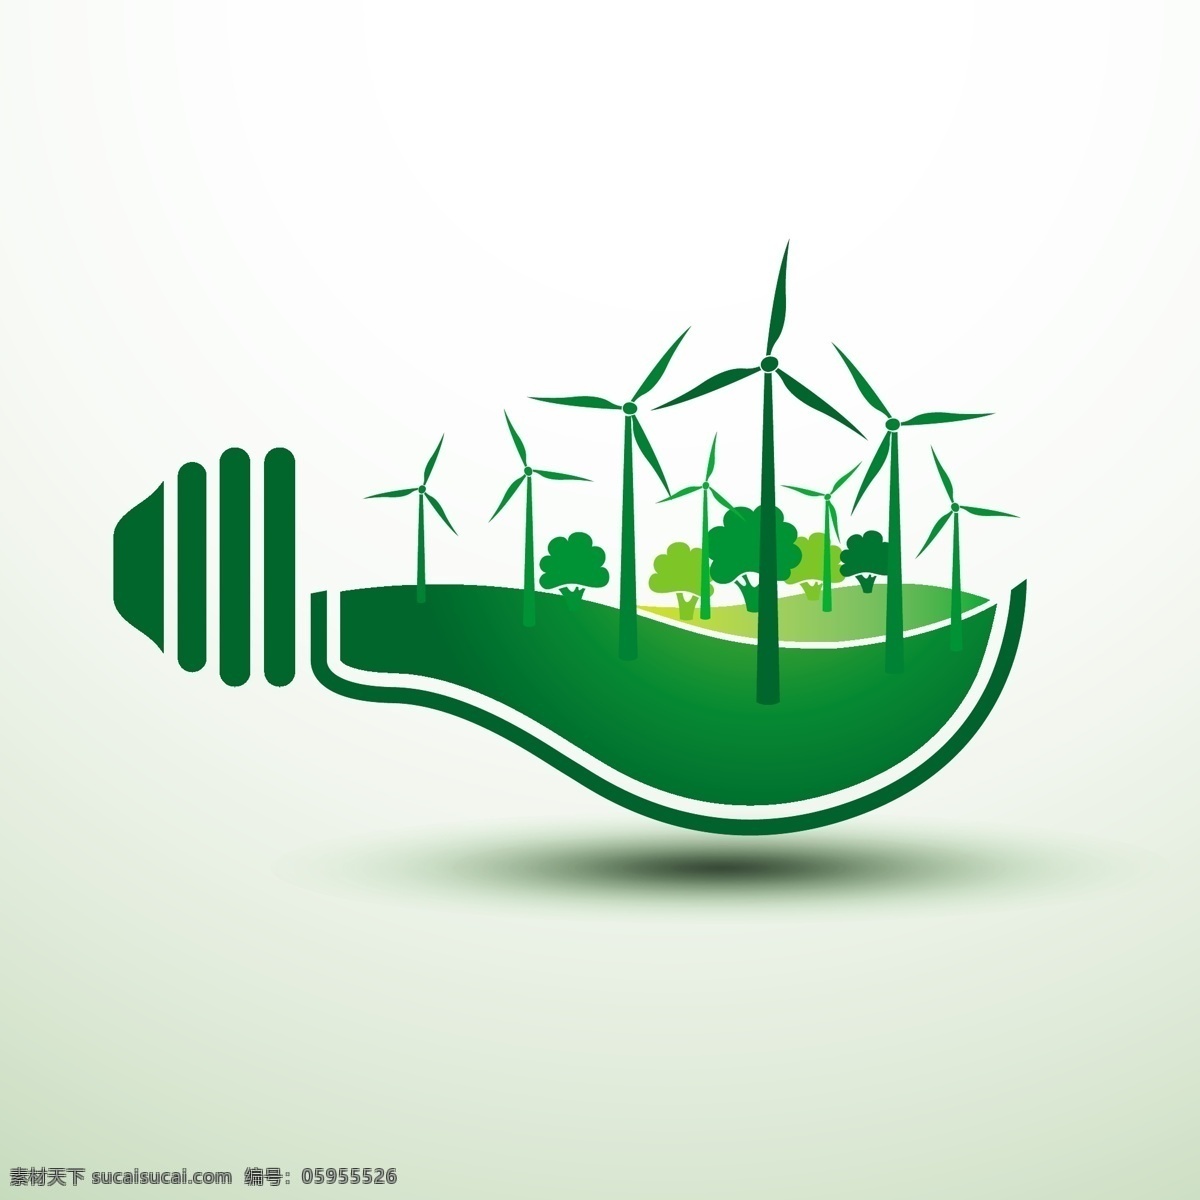 生态图标 生态标识 电灯 灯泡 绿叶 绿色 节能 能源 环保 eco 生态 手绘 风车 矢量 网页小图标 标志图标